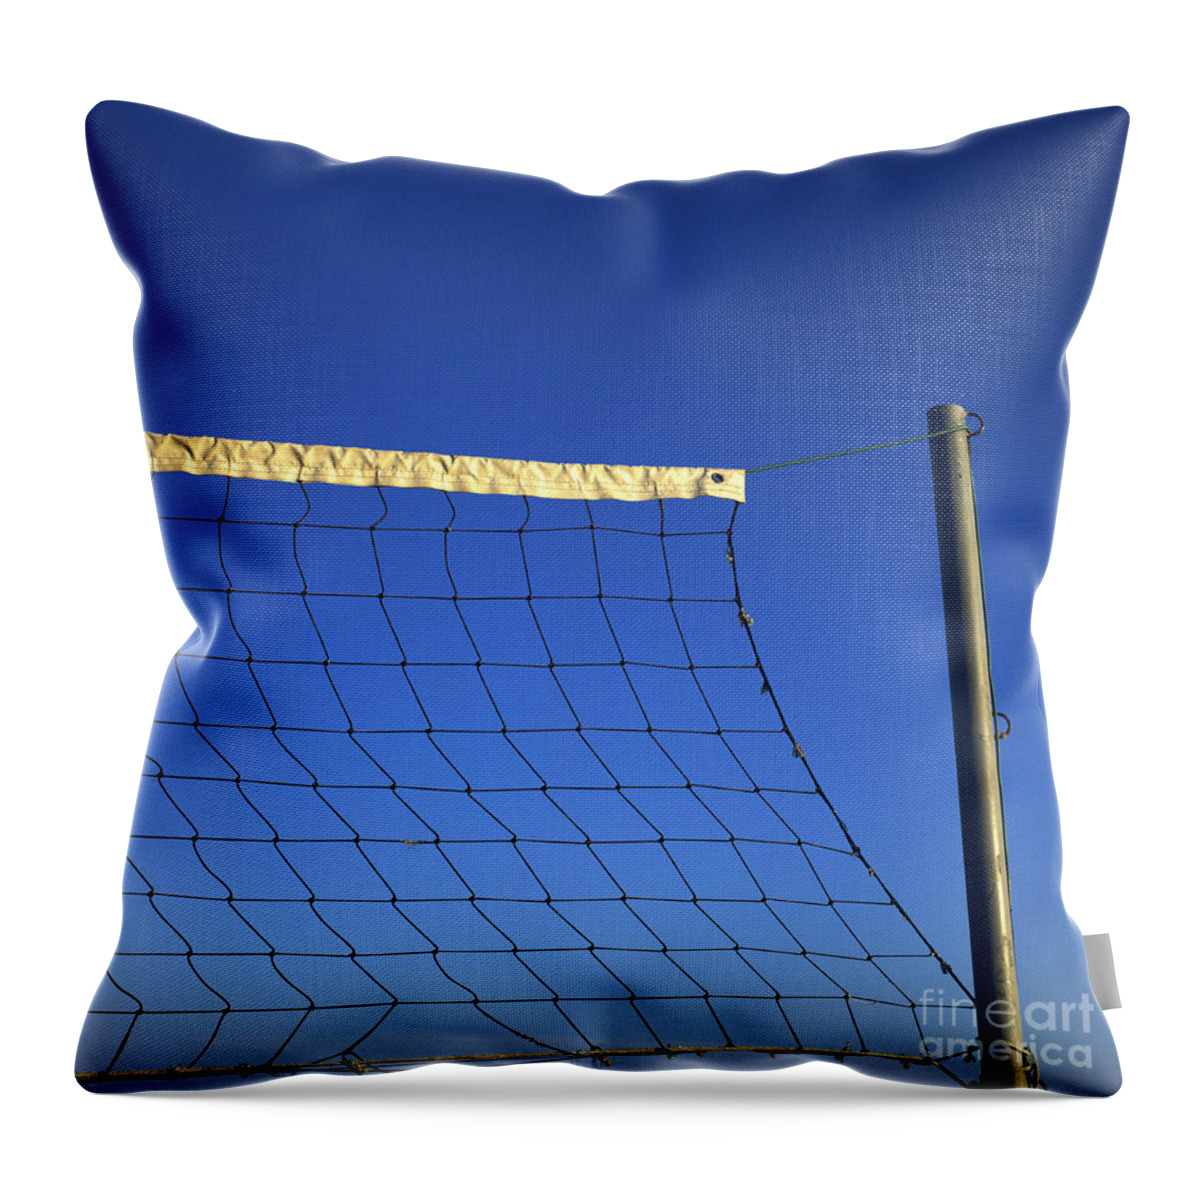 Net Throw Pillow featuring the photograph Close-up of a volleyball net abandoned. by Bernard Jaubert